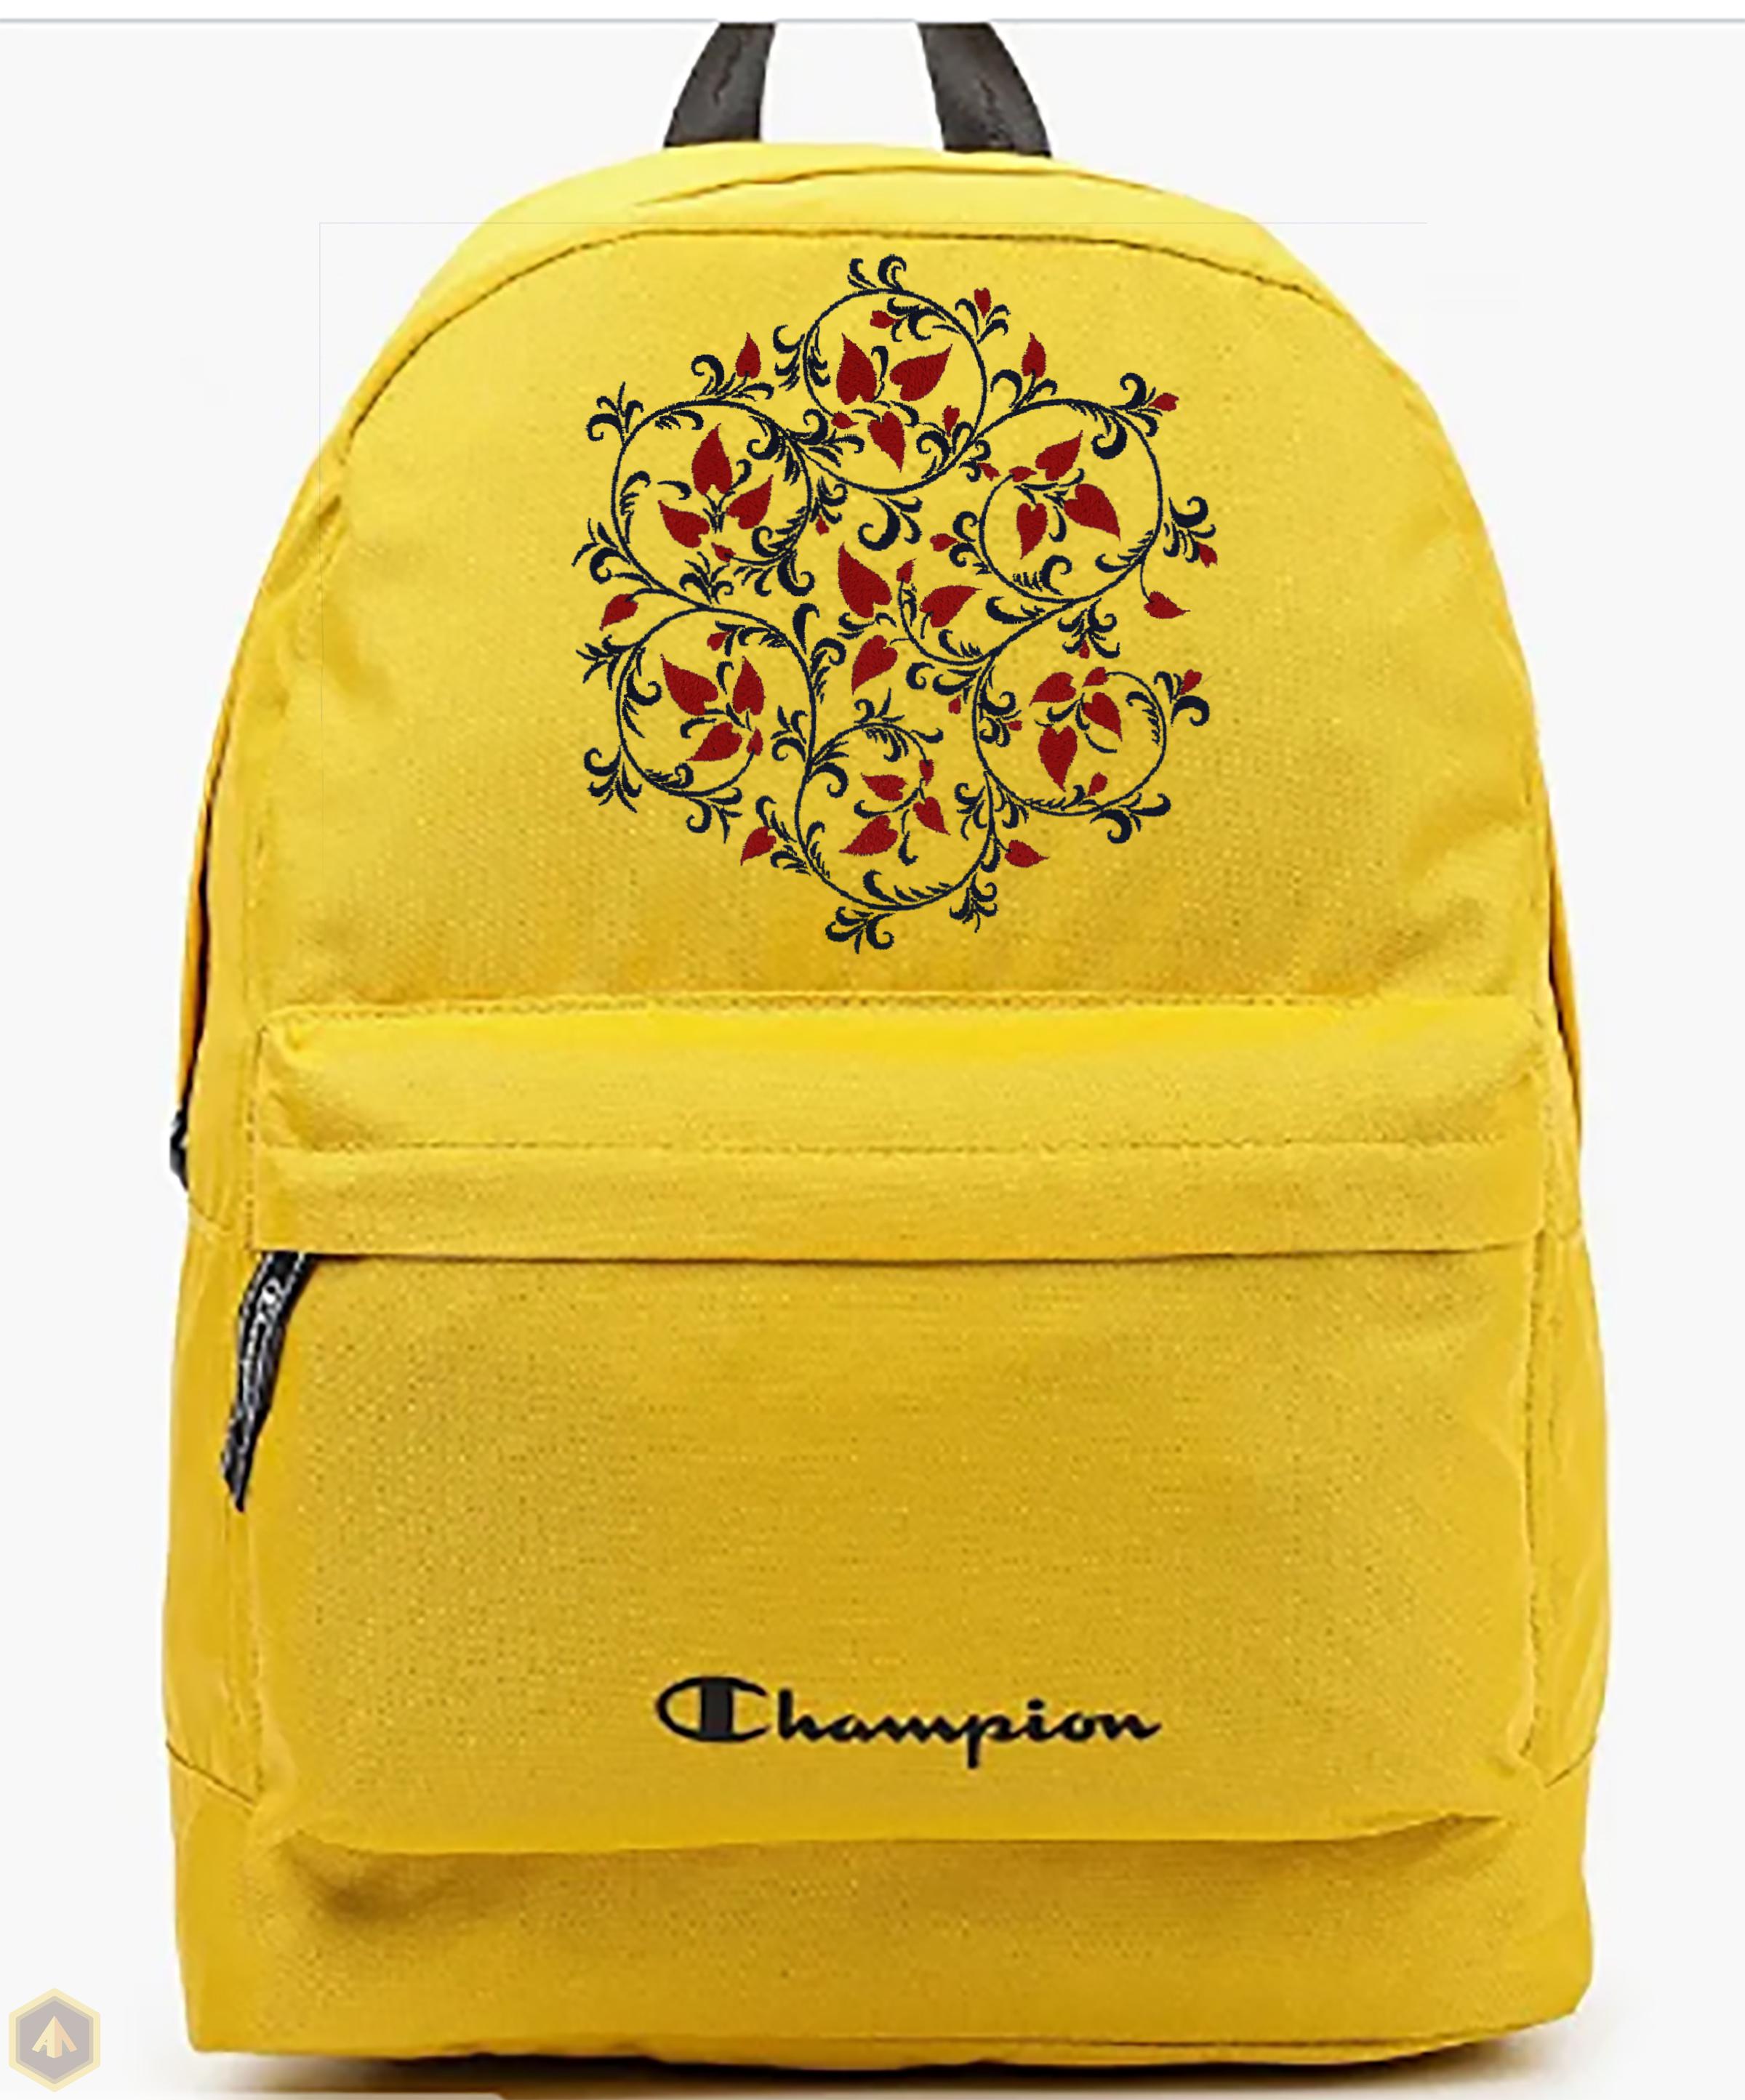 5.Жёлтый рюкзак с сердечками